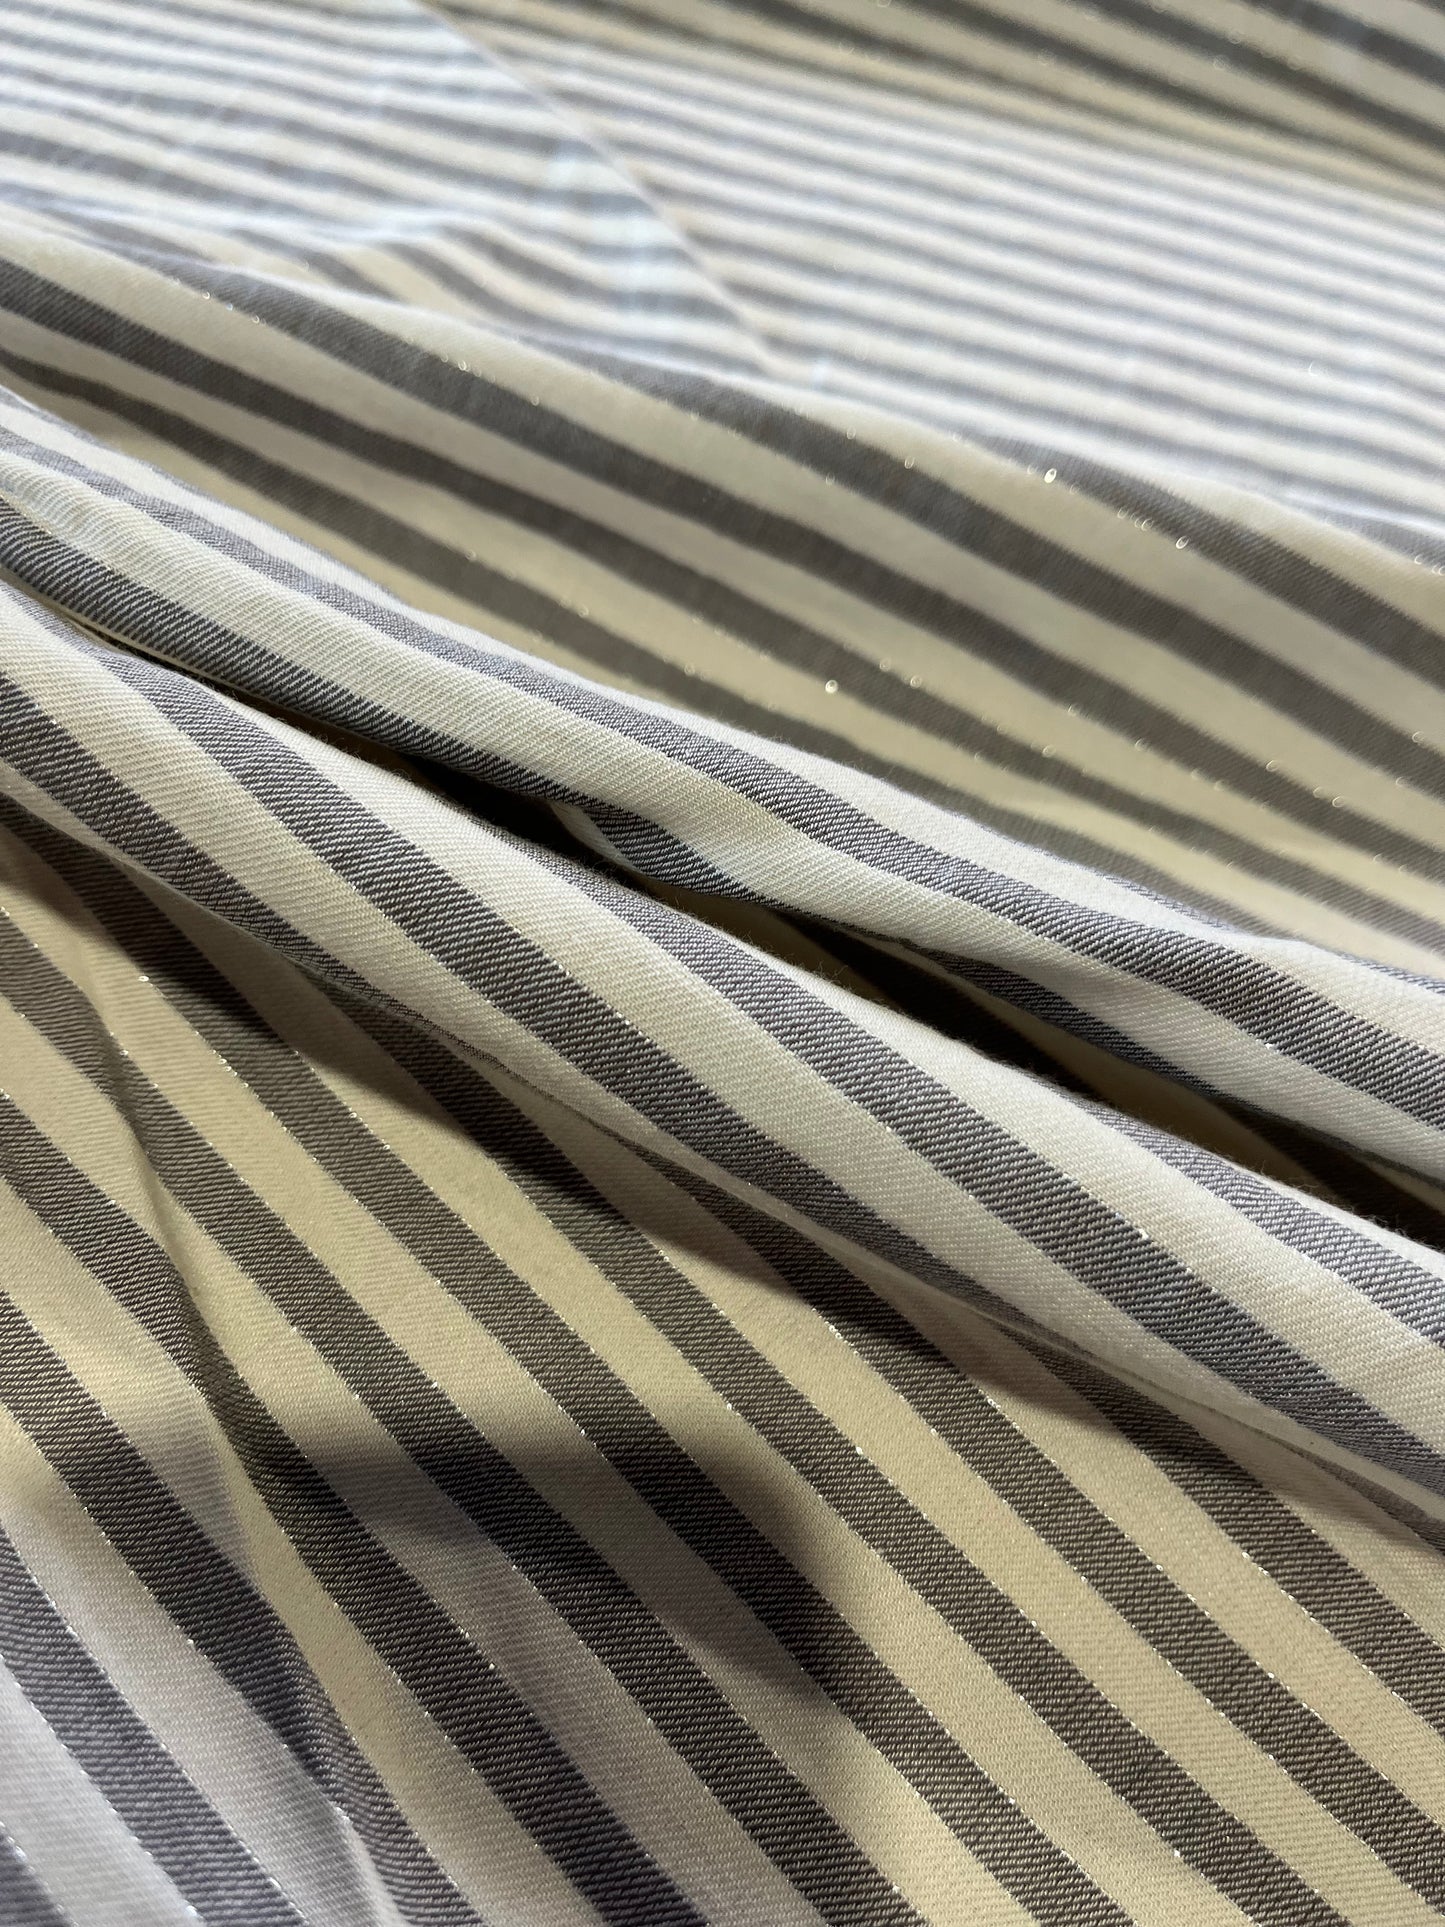 Pisa 049 woven stripes grey/white with lurex